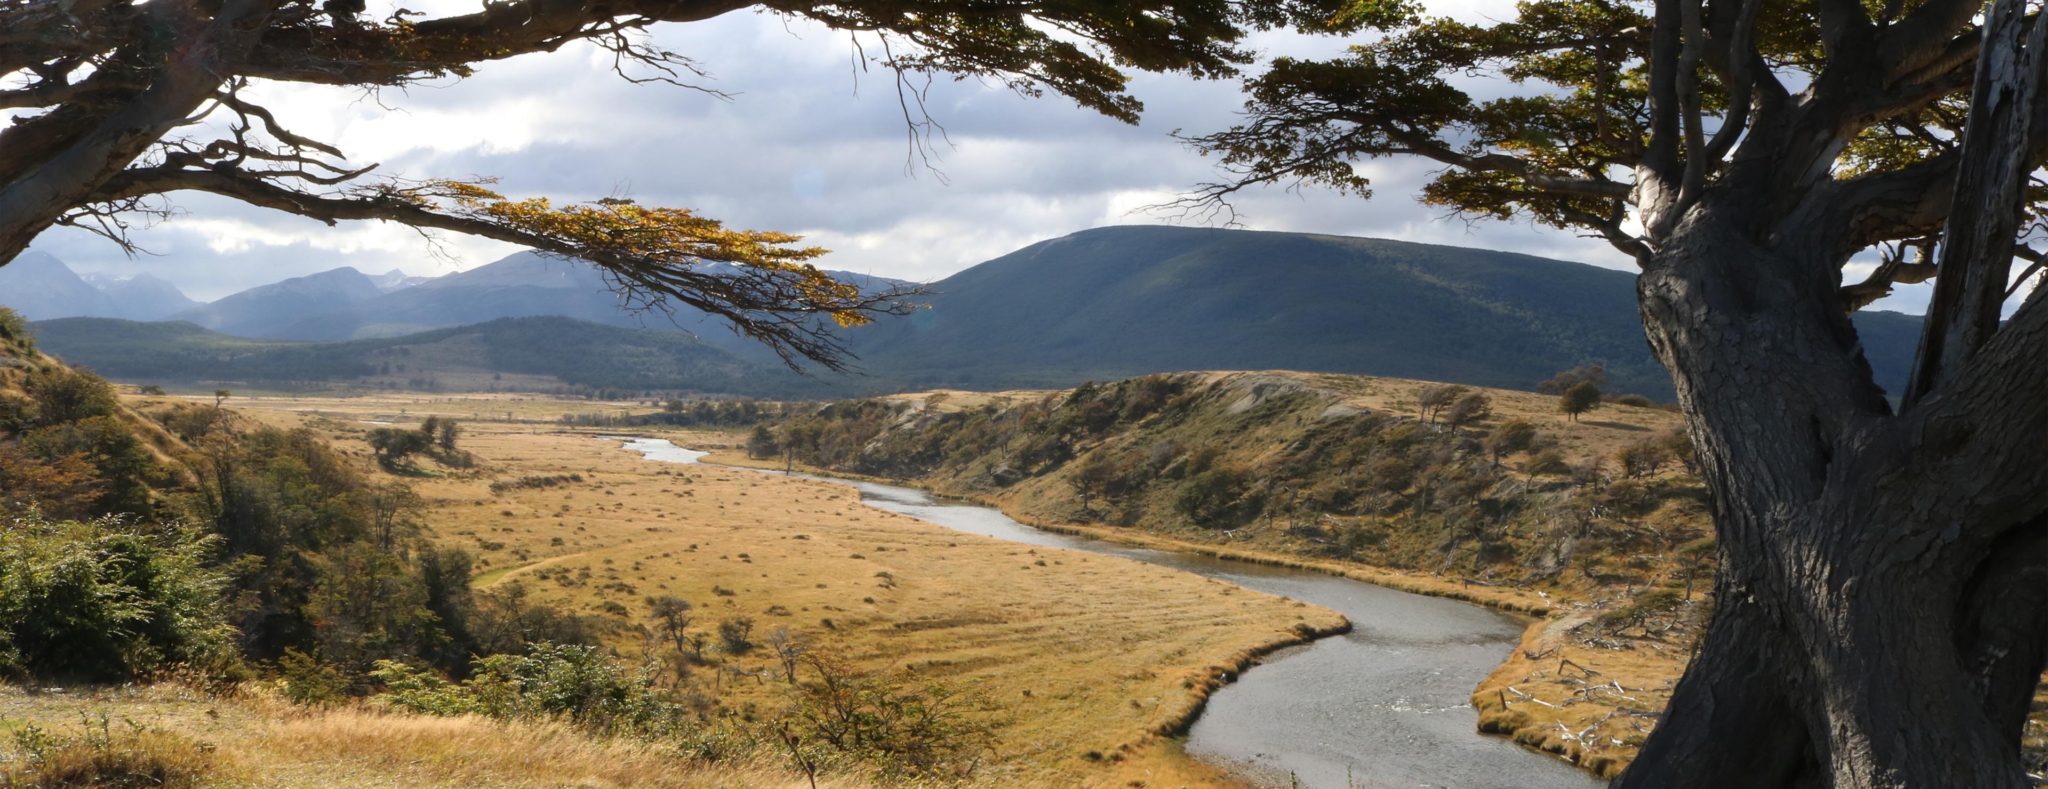 Tierra del Fuego National Park, Argentinië